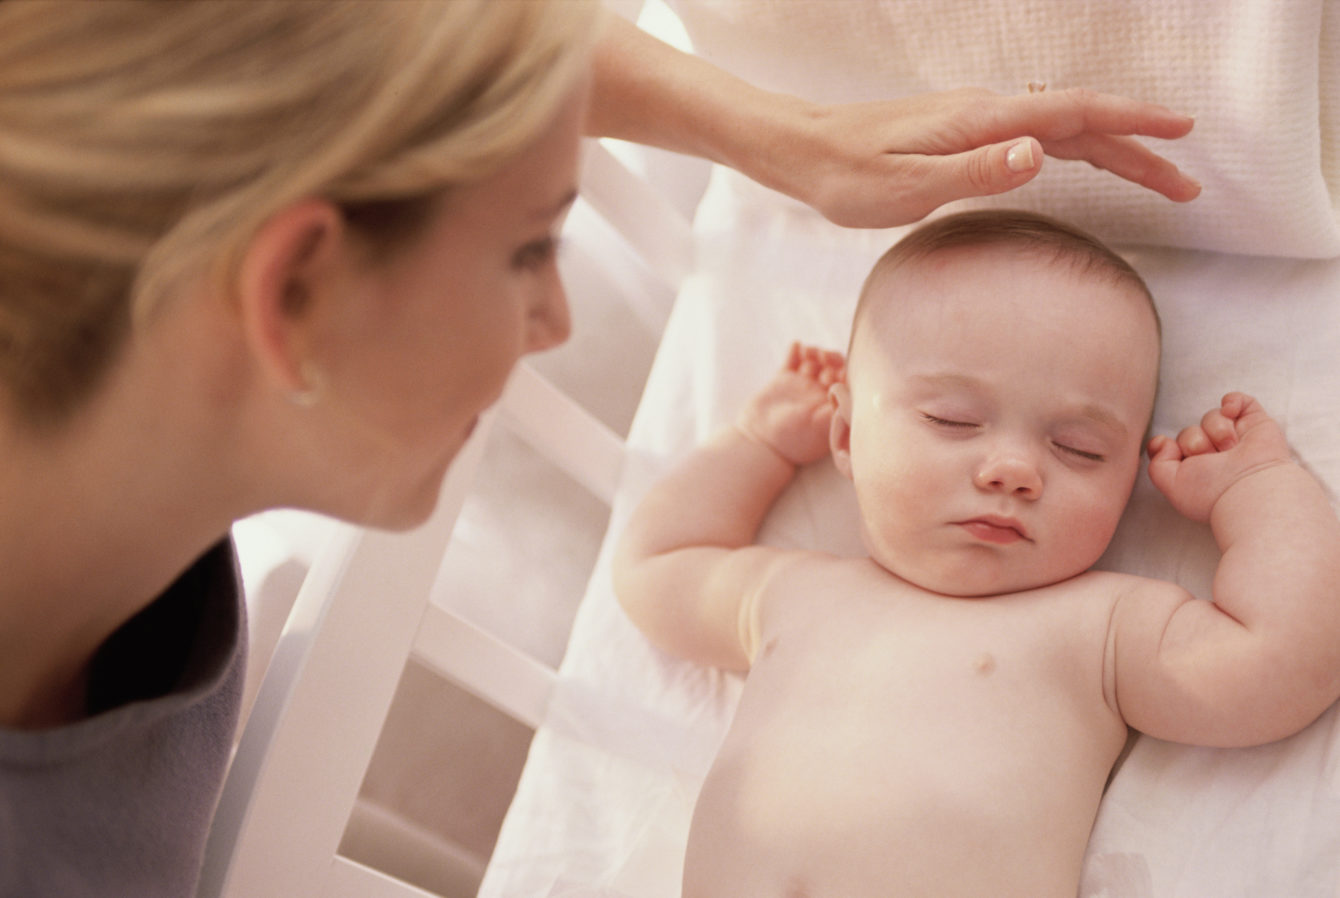 Lời khuyên dành cho các bà mẹ mới làm quen với em bé sơ sinh